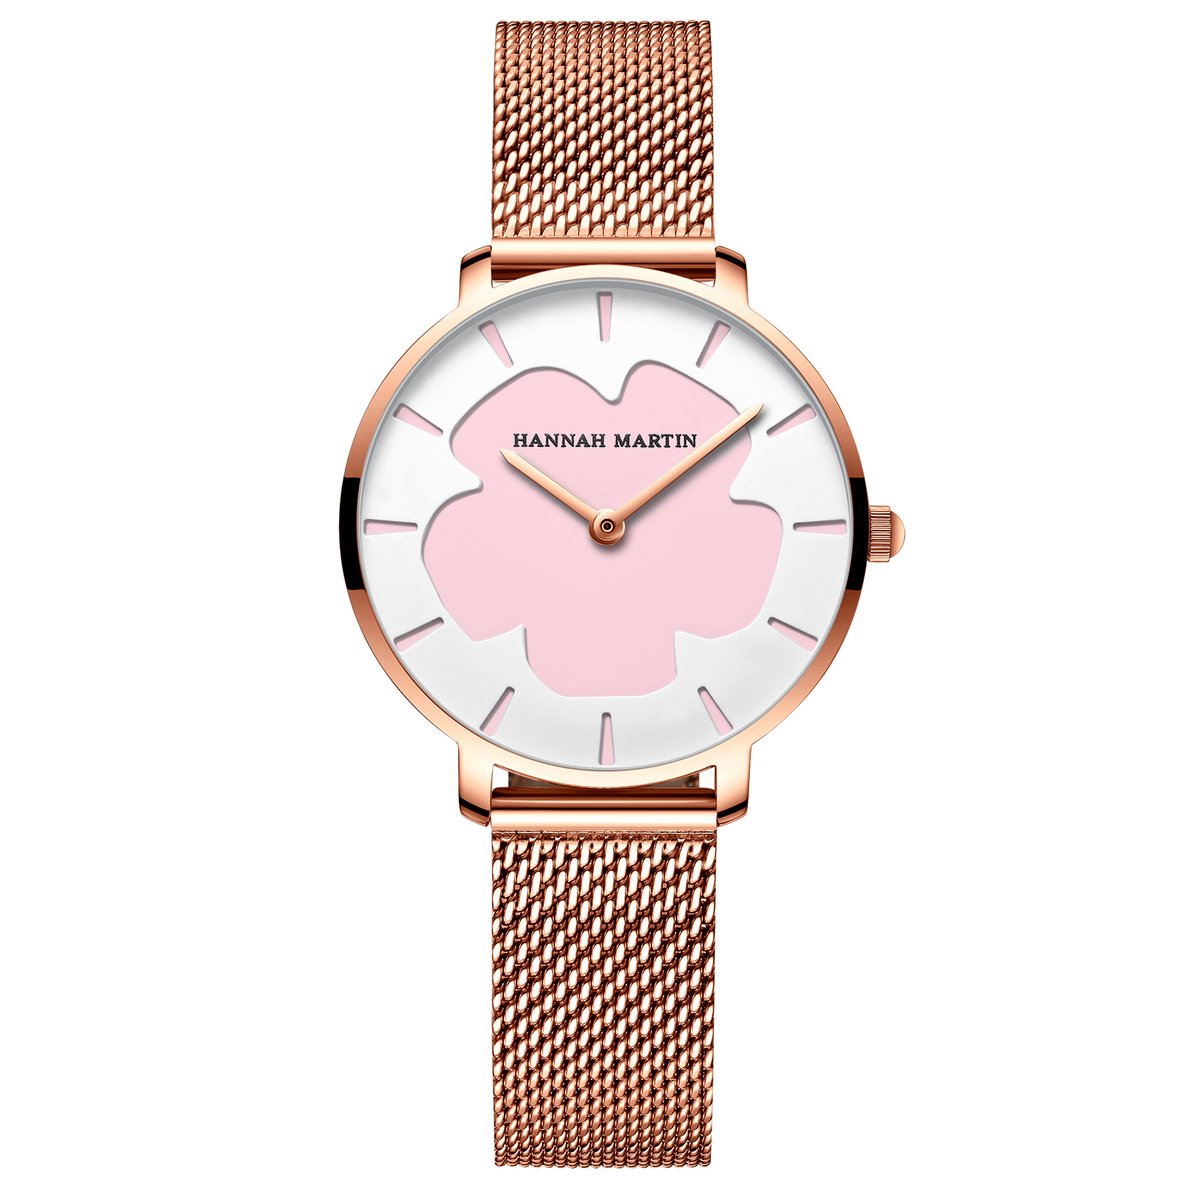 HANNAH MARTIN horloge met gouden stalen polsband, wit naar roze overgaande wijzerplaat in het donker, gouden horlogekast voor dames met stijl ( model 1333 P )